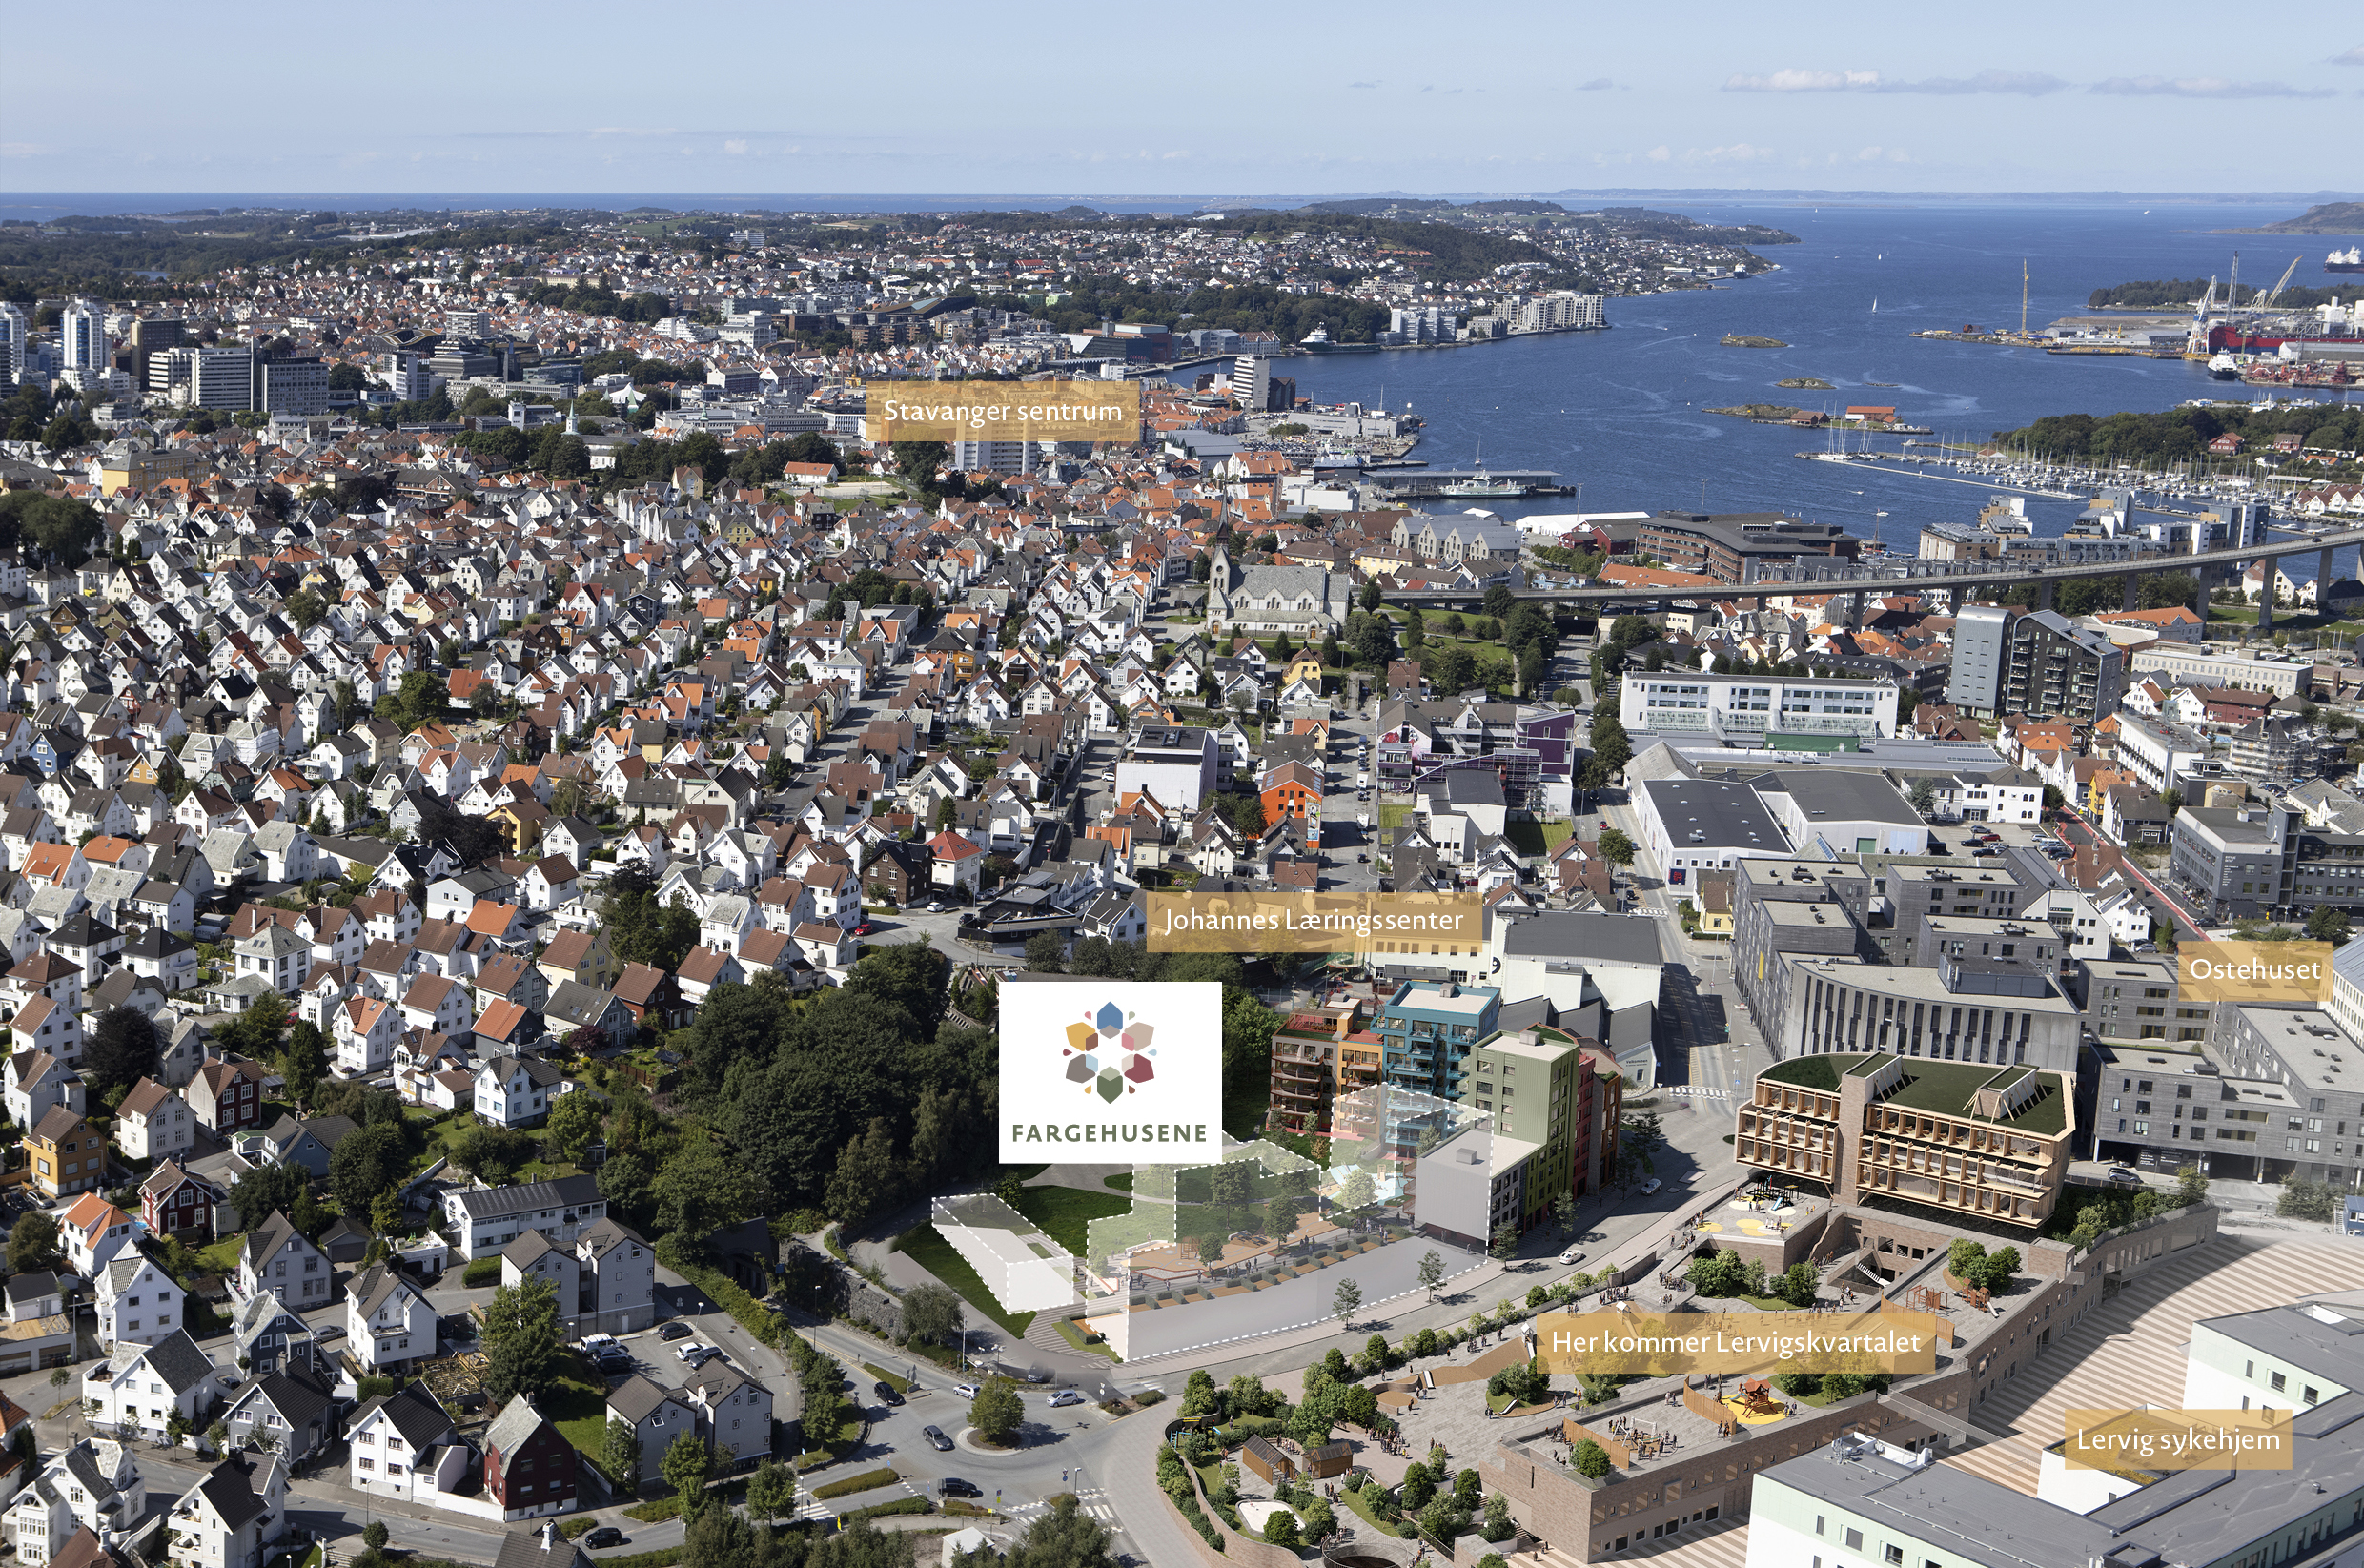 Flyfoto over Stavanger Øst som viser hvor Fargehusene kommer.